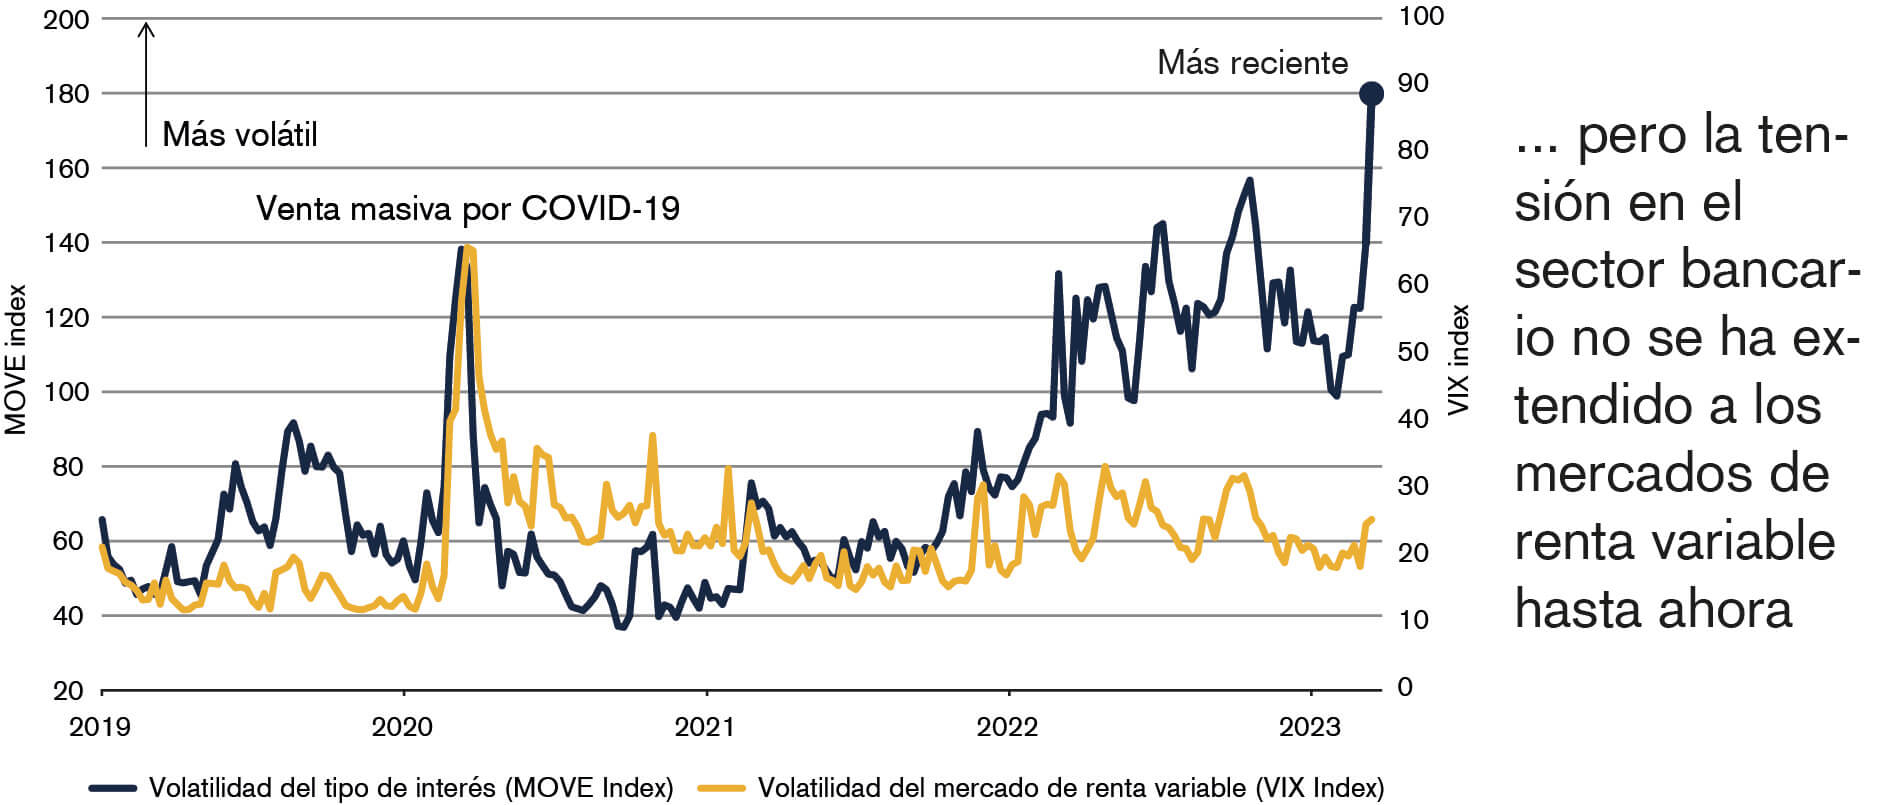 El gráfico muestra que durante el COVID-19 se disparó la volatilidad de los mercados de renta variable y fija, si bien la tensión en el sector bancario no se ha extendido hasta ahora a los mercados de renta variable